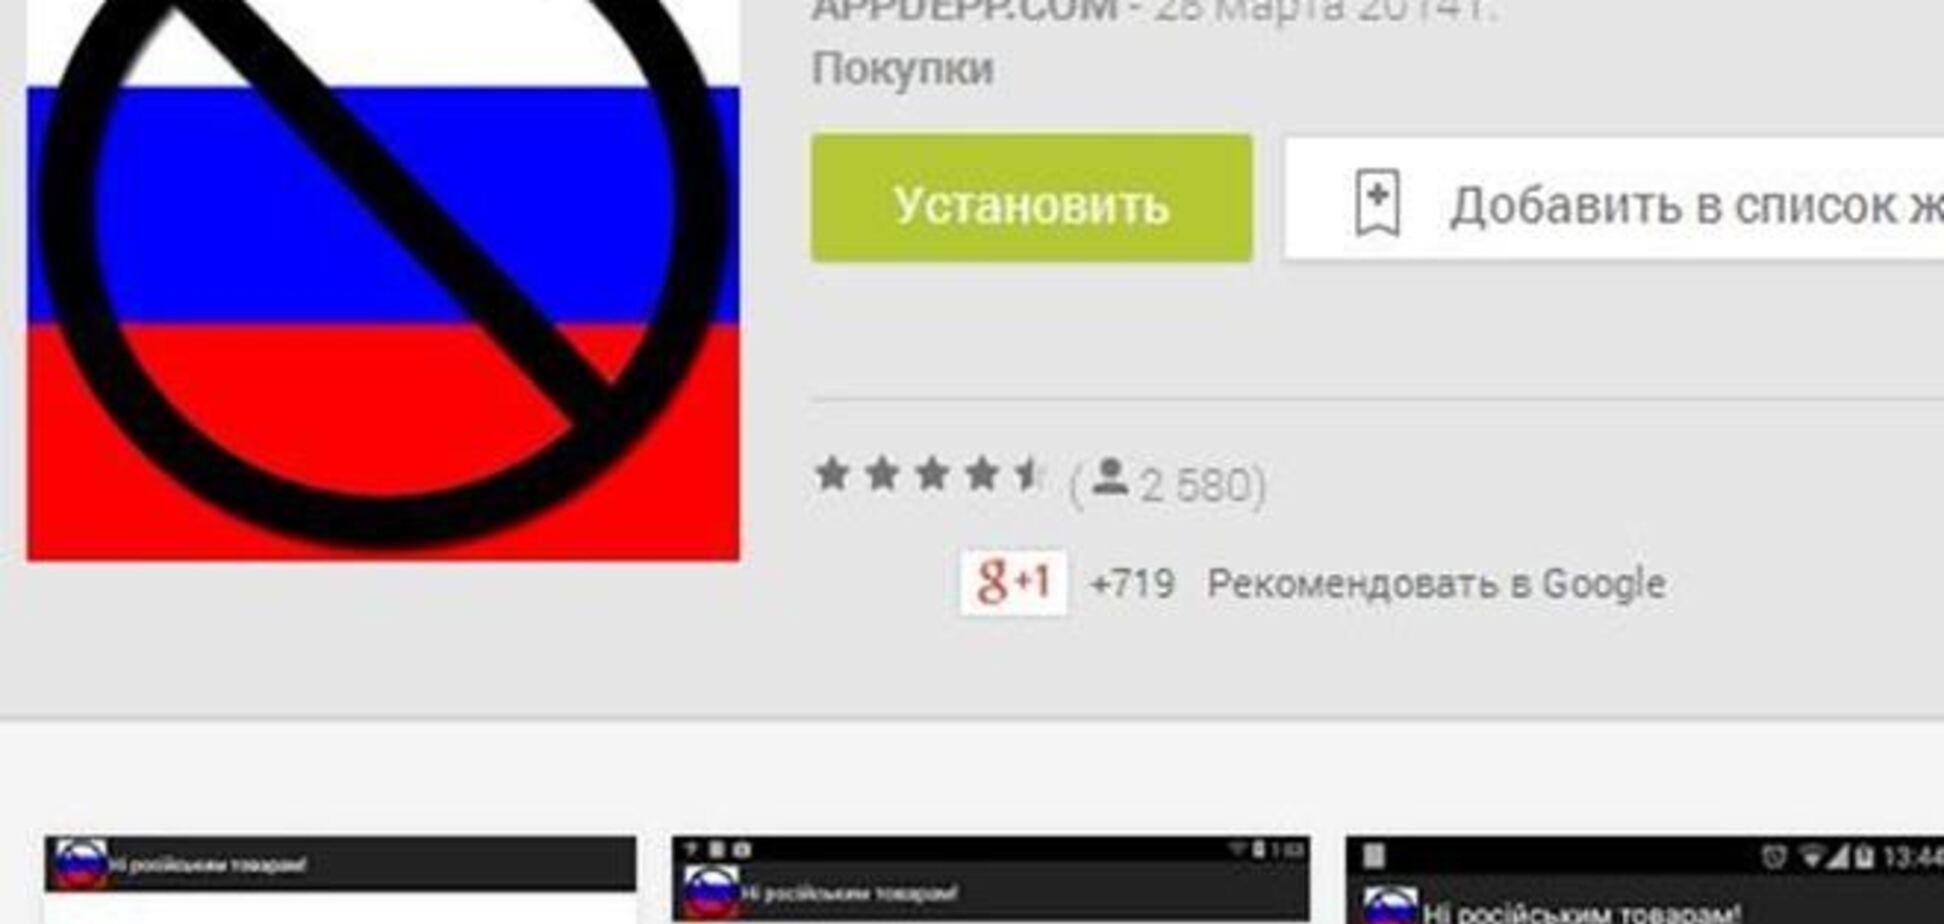 Android-приложение 'Бойкот оккупантов' обеспокоило московских производителей